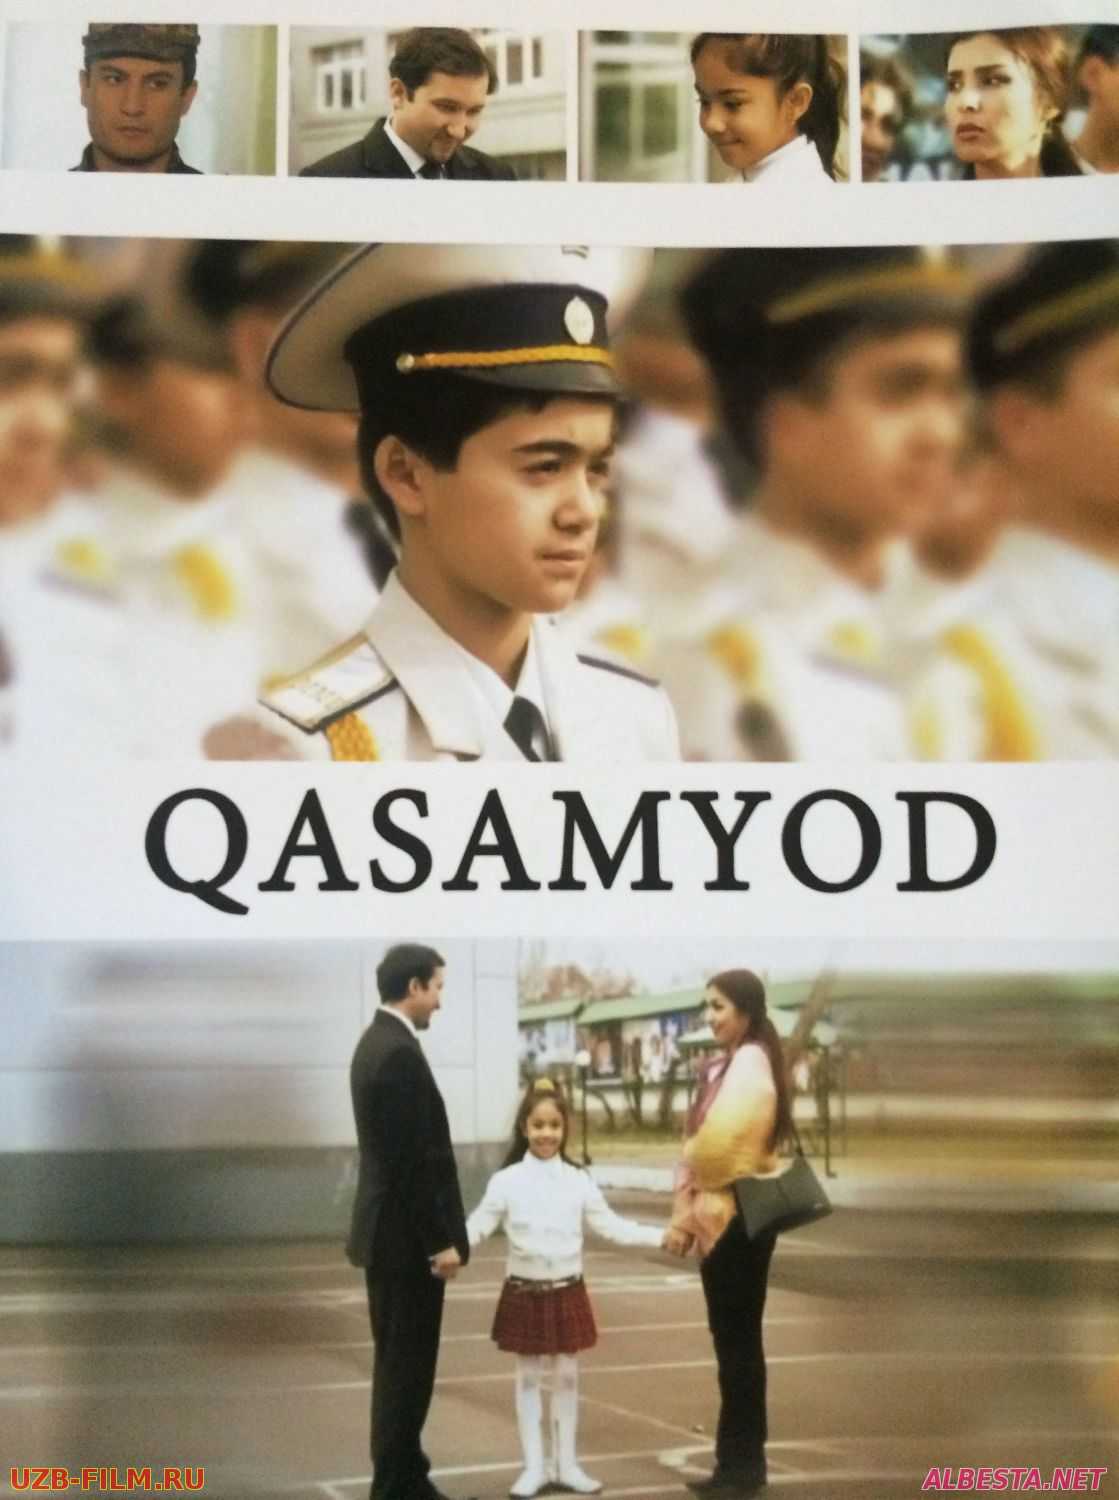 Qasamyod (o'zbek film) | Касамёд (узбекфильм) 2006